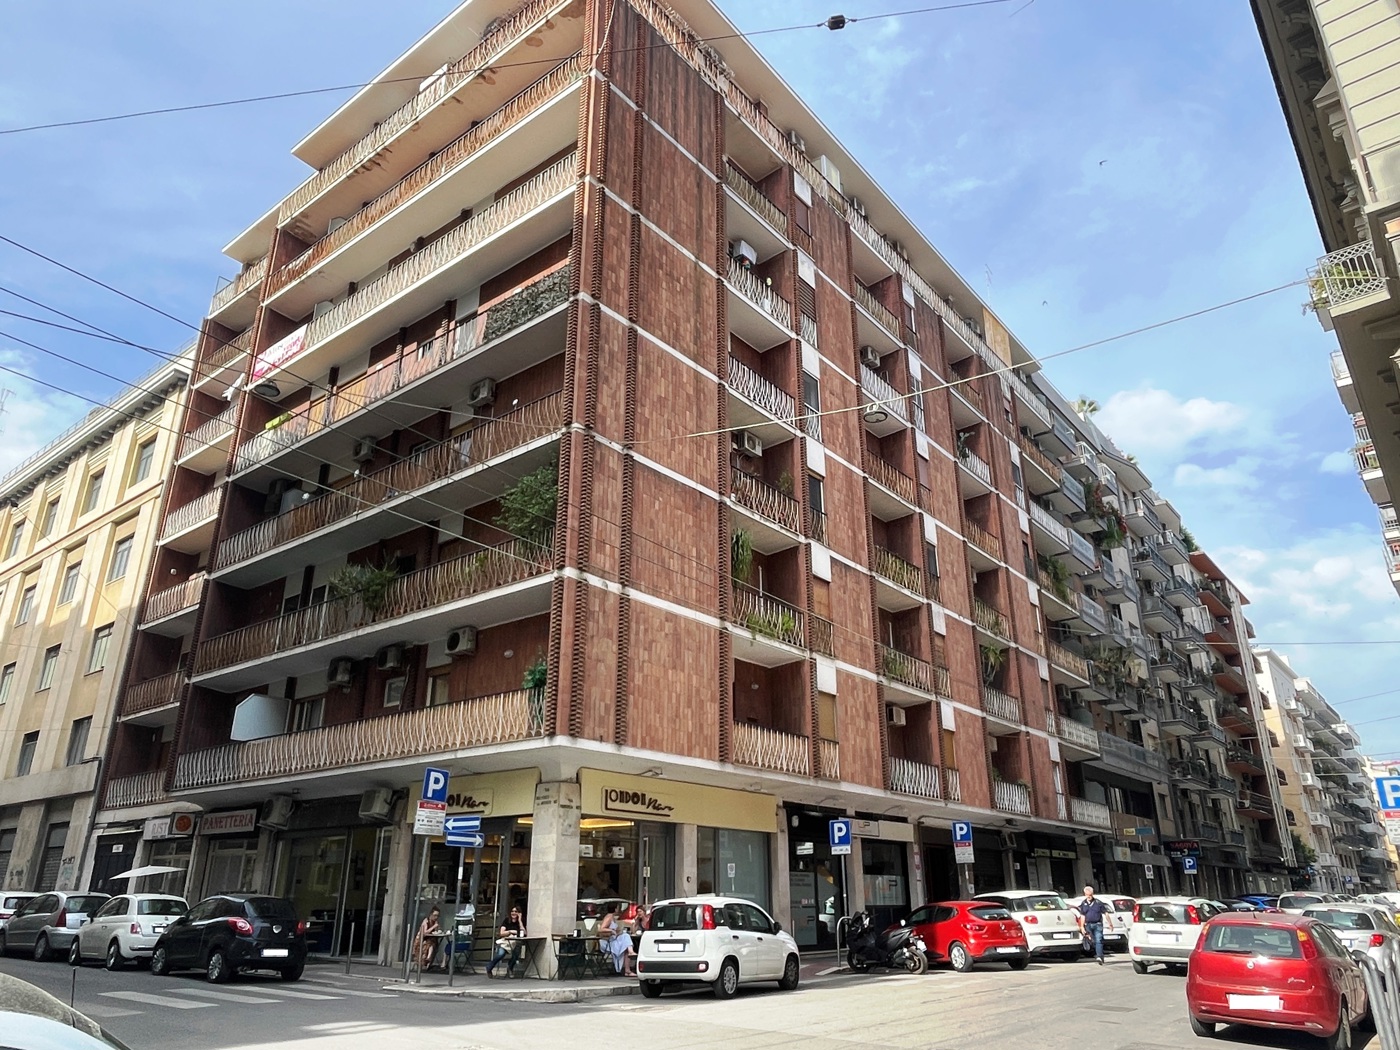 Appartamento da ristrutturare a Bari